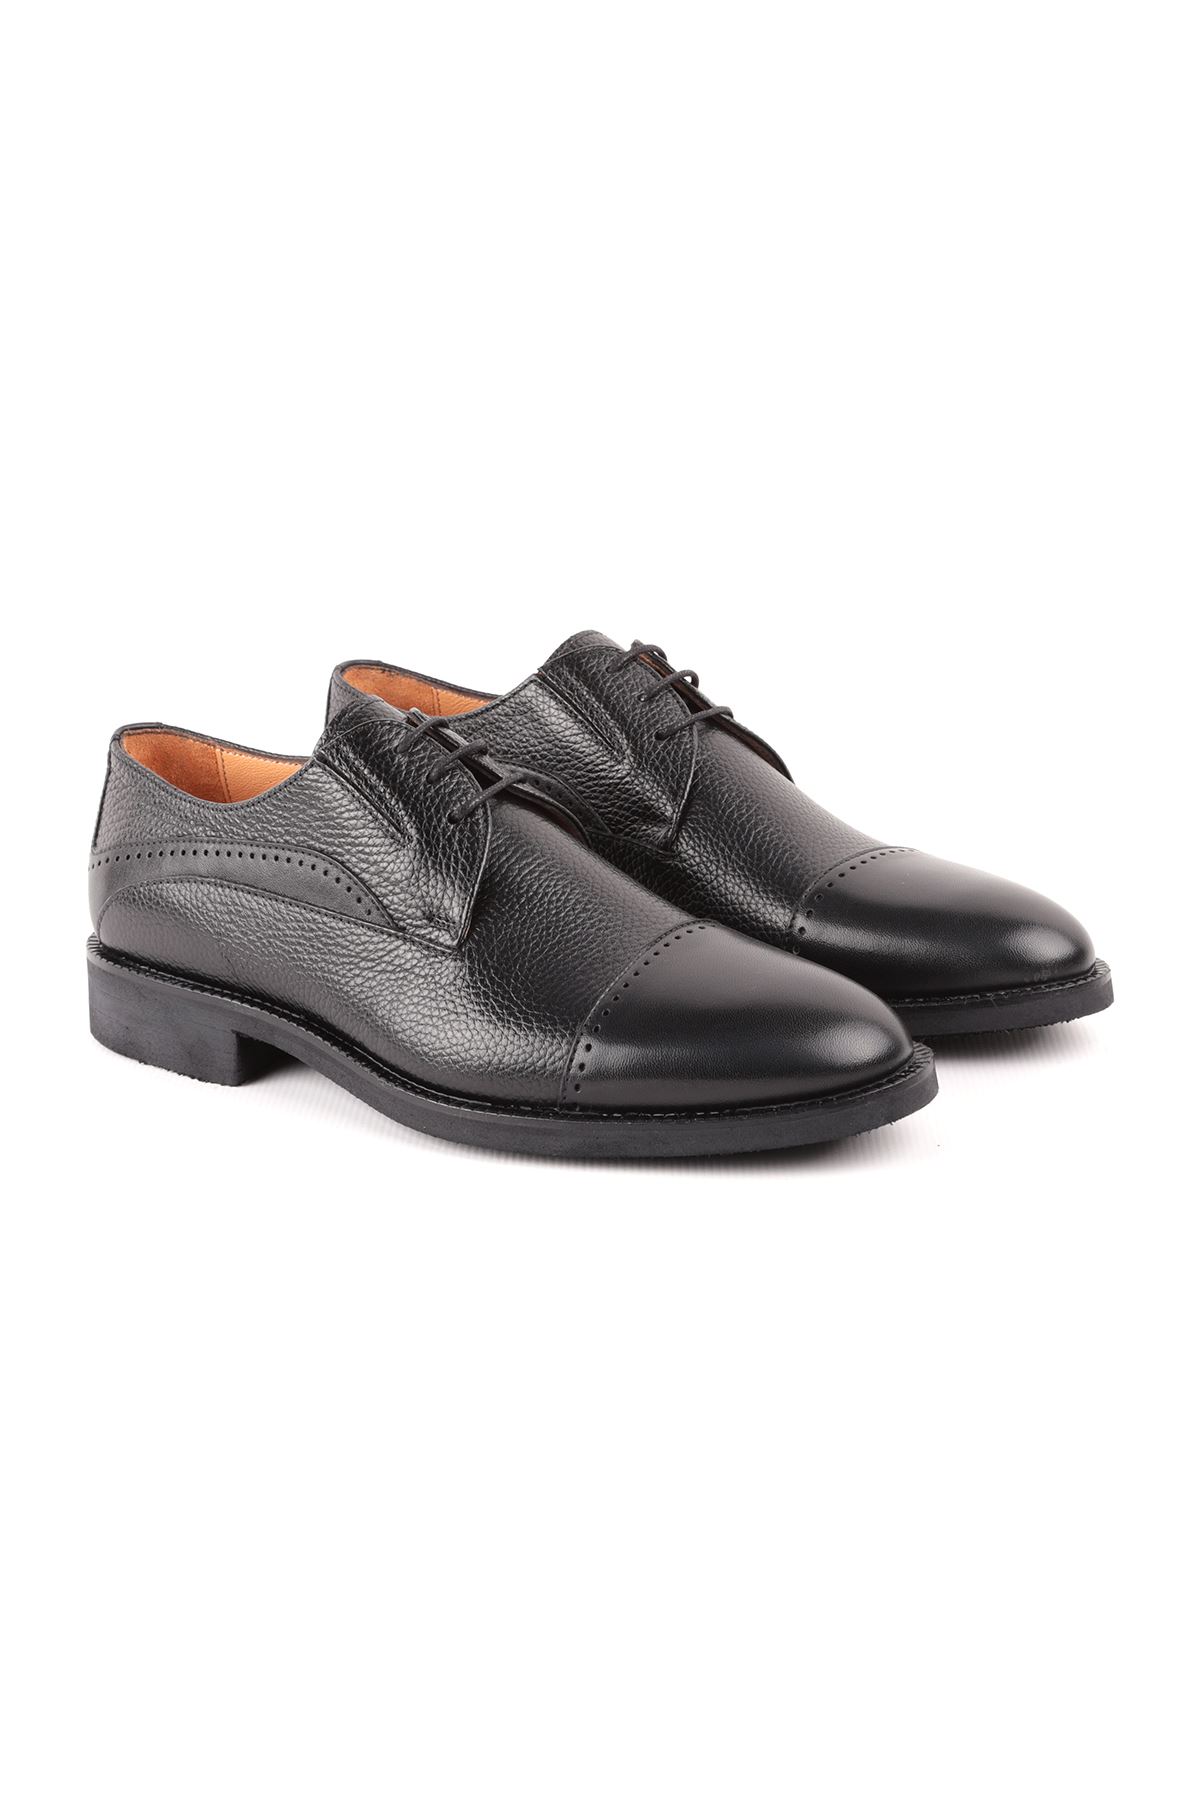 Libero L4782 Siyah Deri Klasik Erkek Ayakkabı 